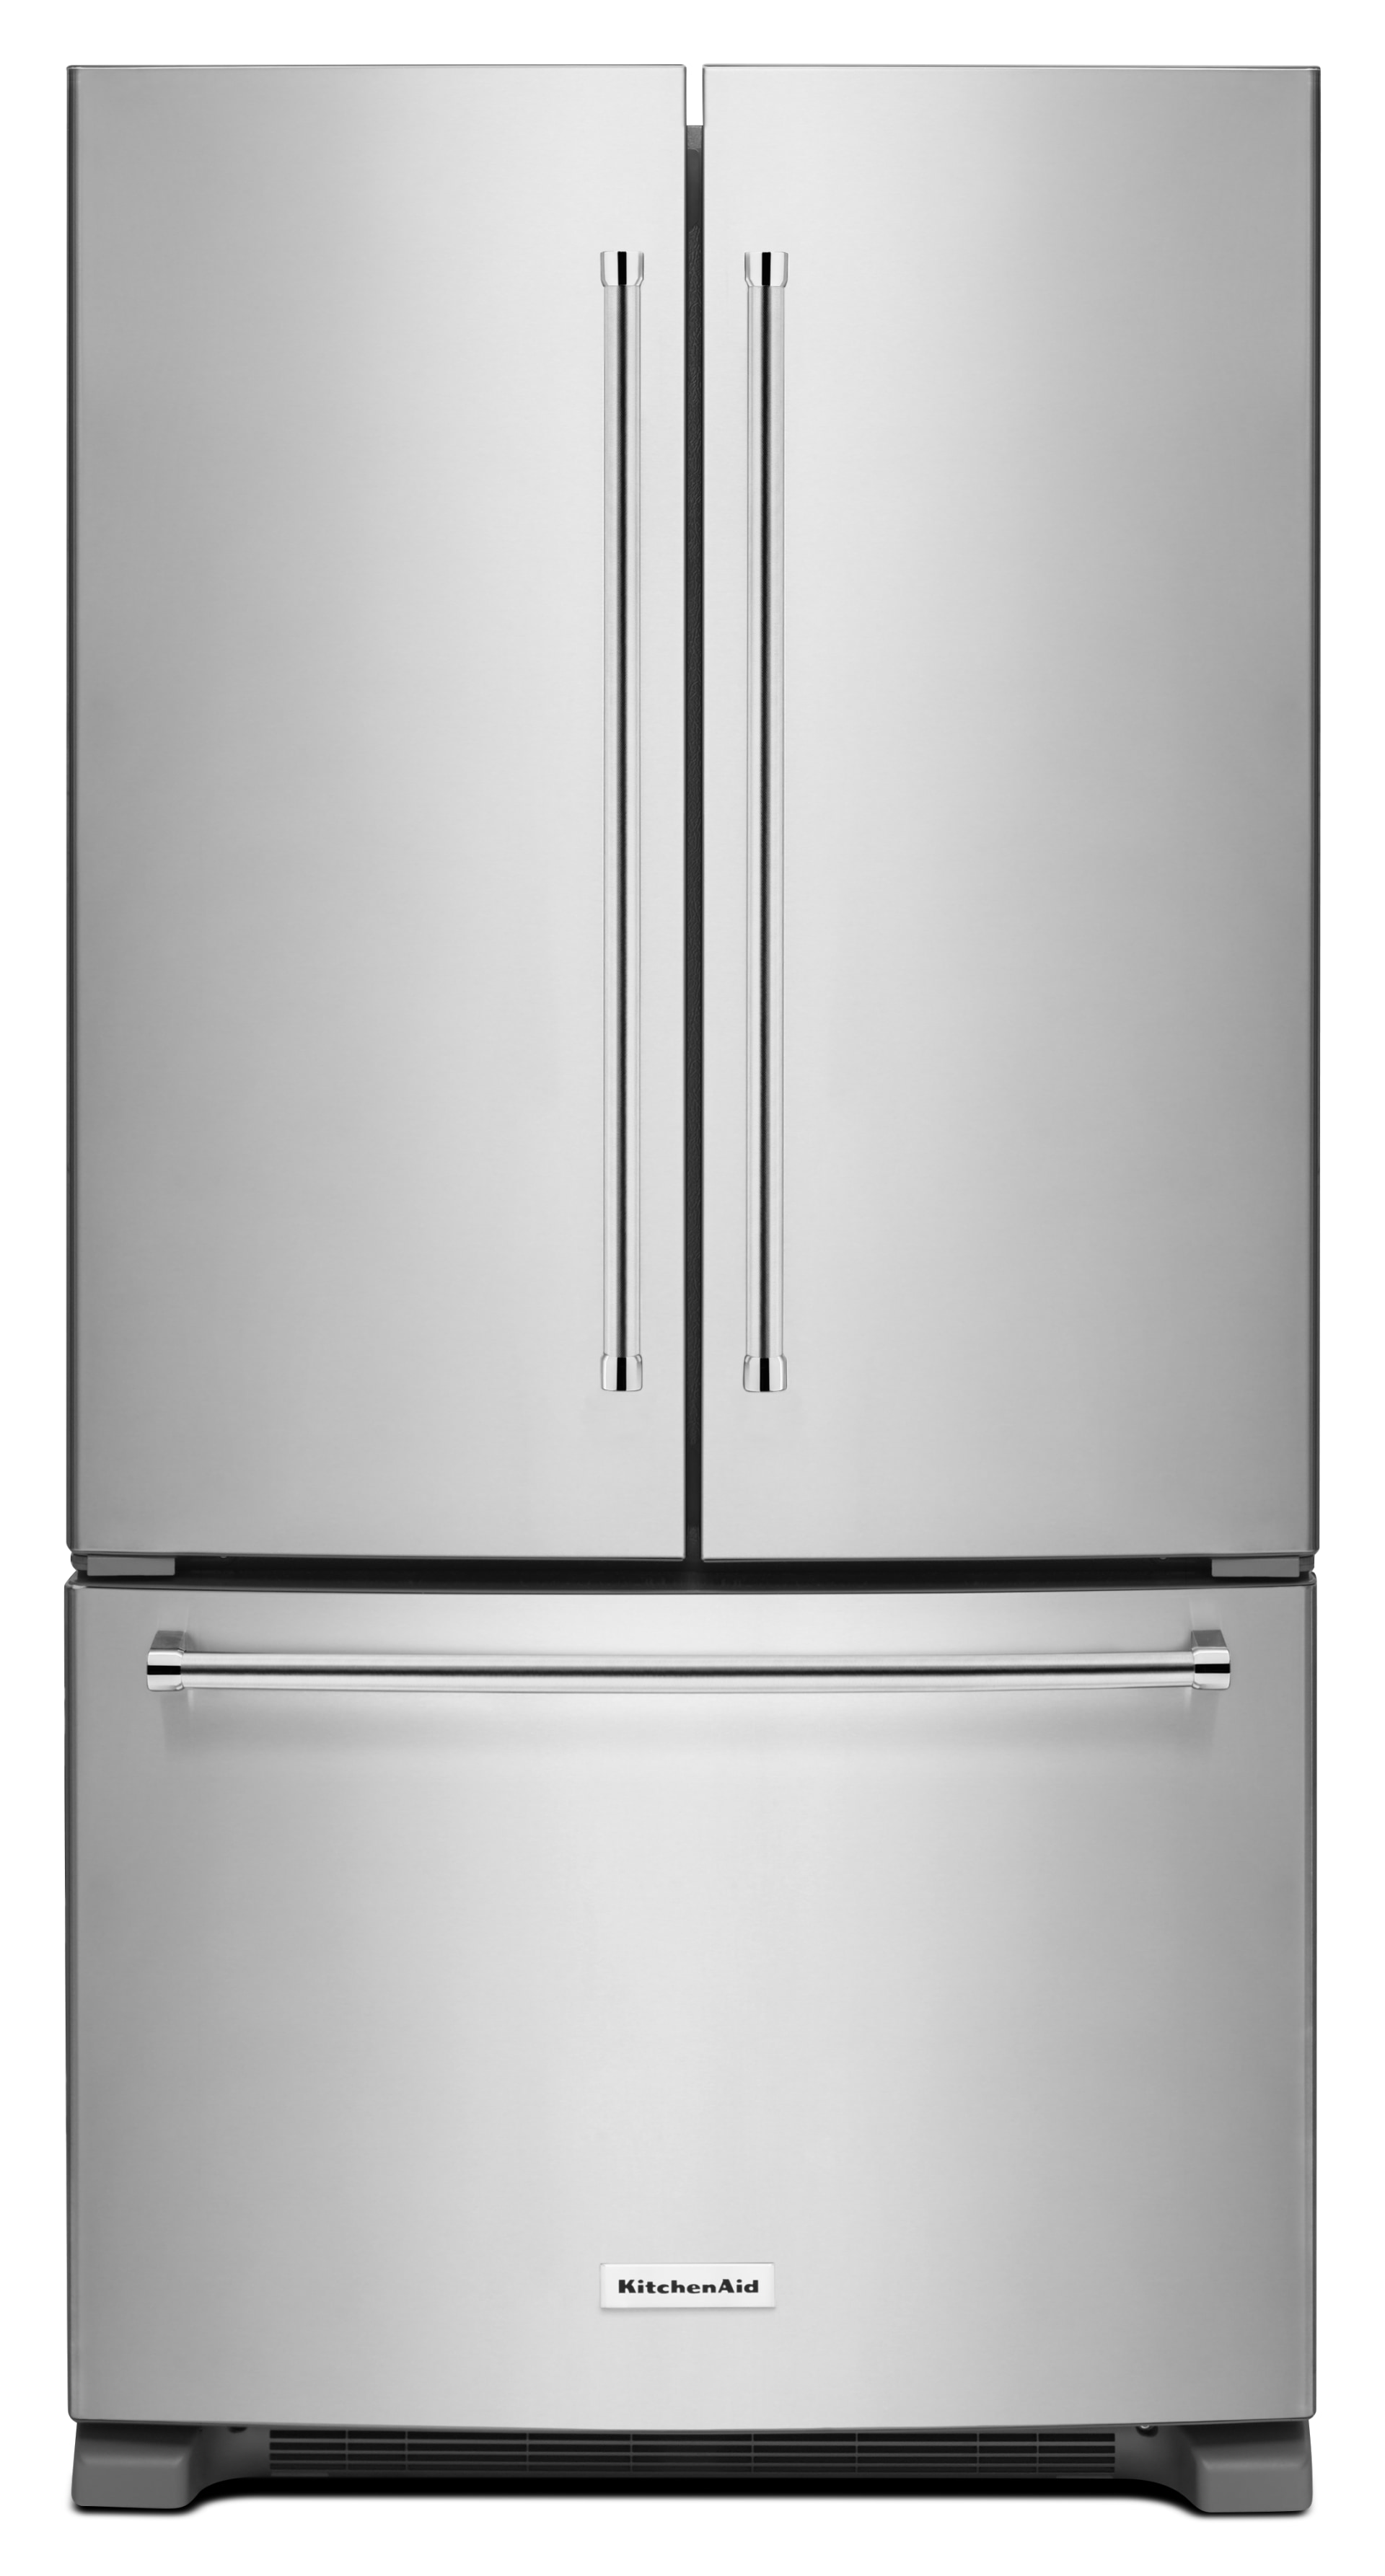 KitchenAid Refrigerator Model KRFC300ESS01 Parts